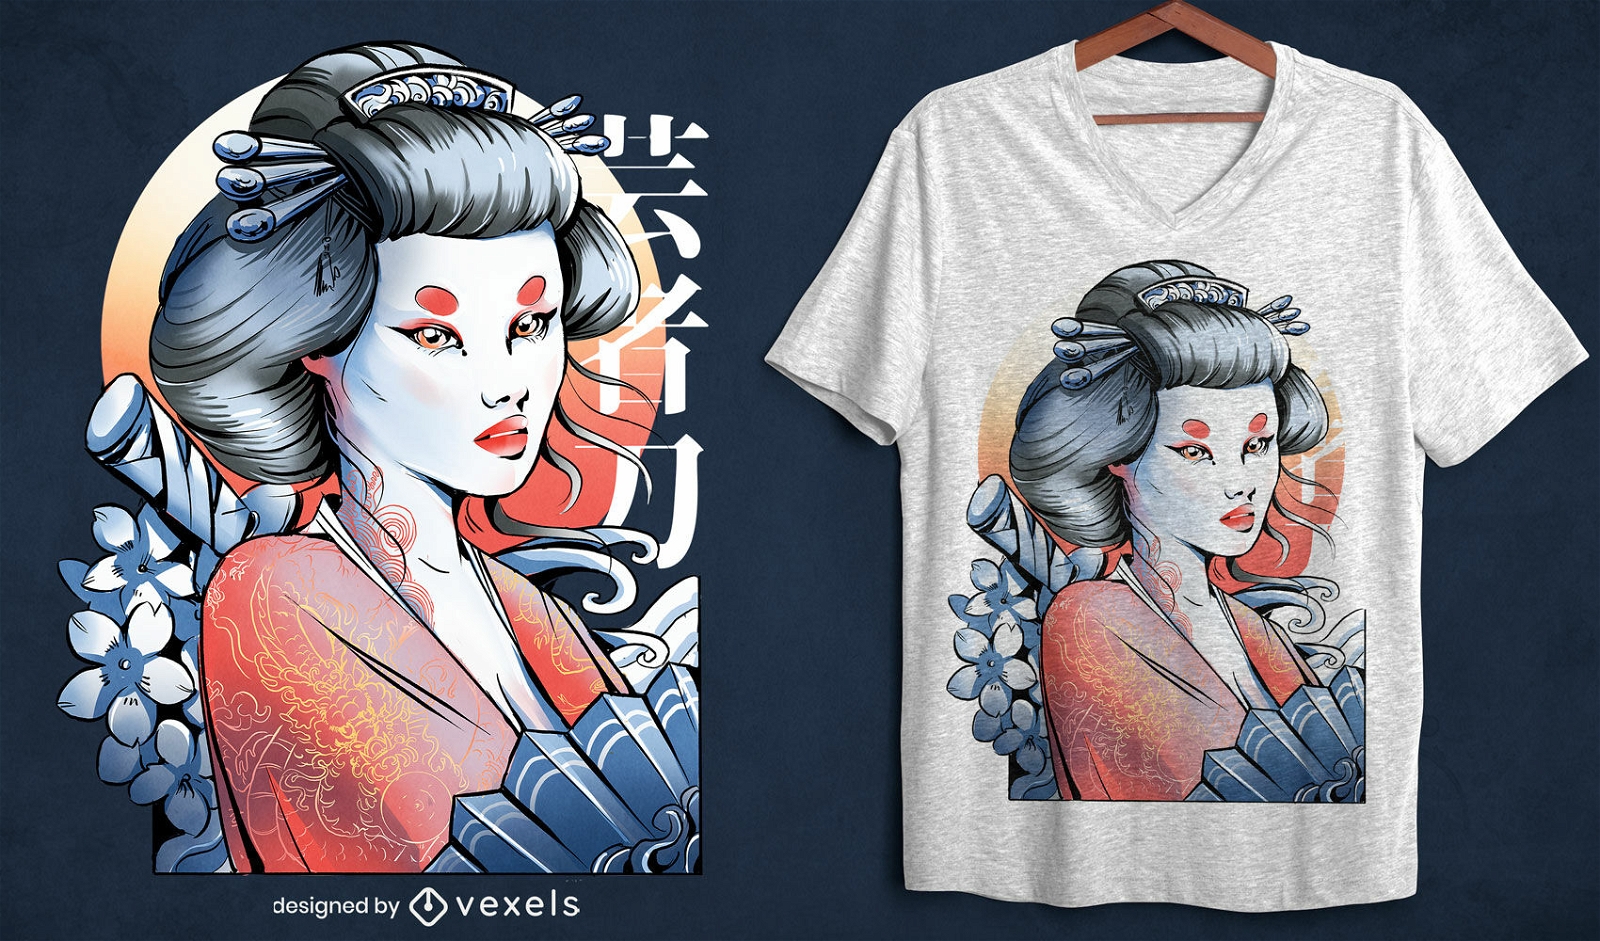 Dise?o de camiseta de geisha japonesa.